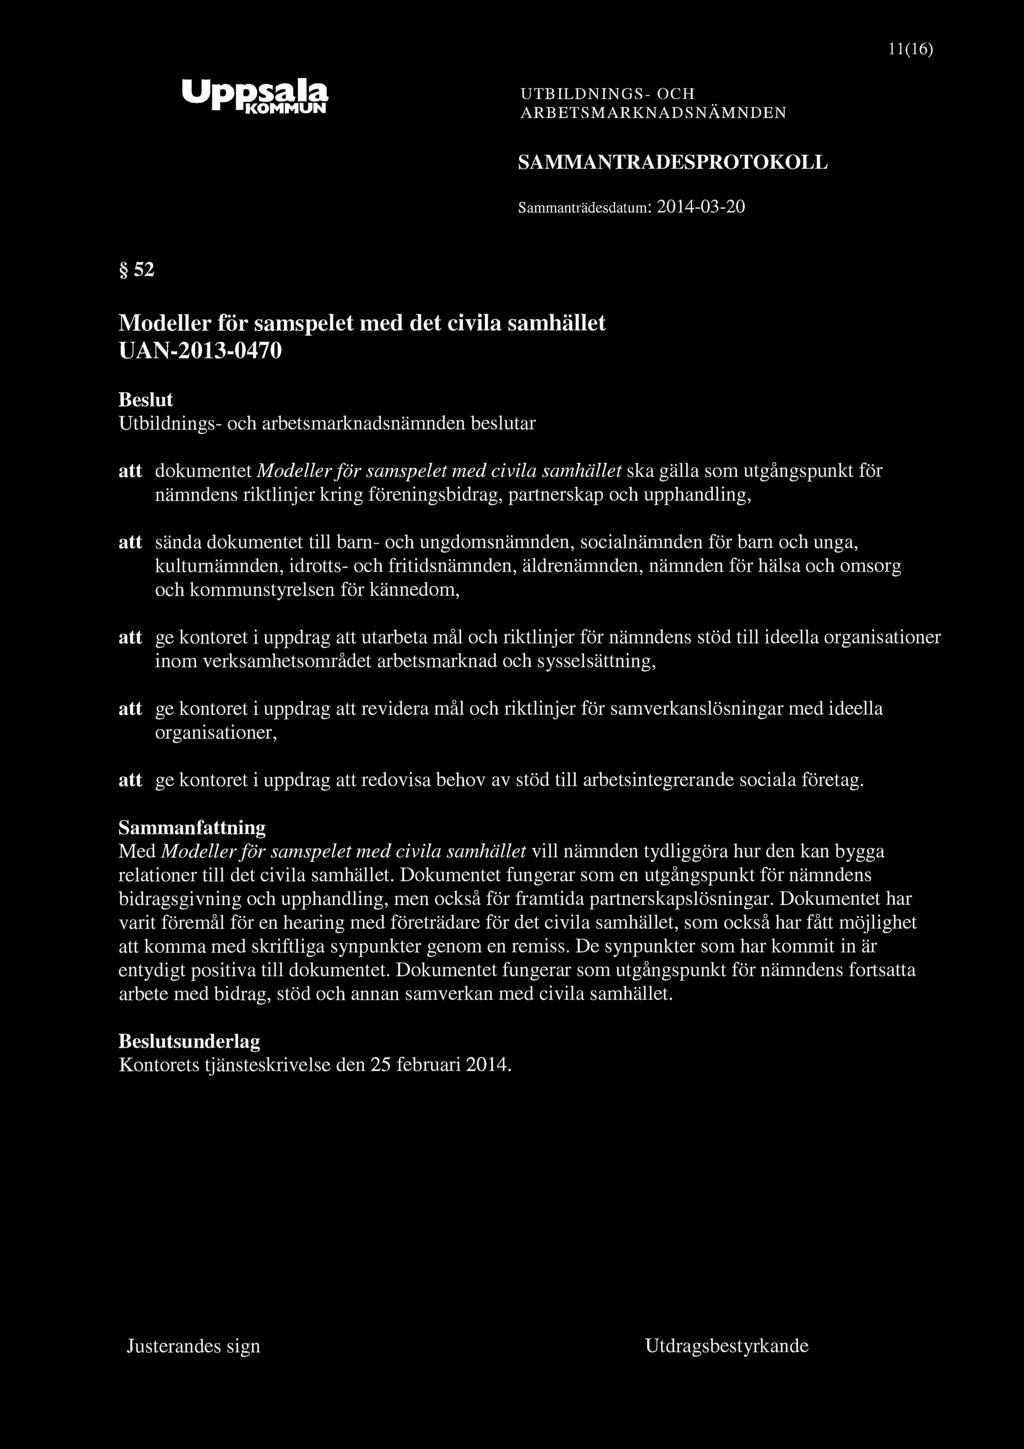 UpPSdlSl ^ KOMMUN 11(16) SAMMANTRADESPROTOKOLL 52 Modeller för samspelet med det civila samhället UAN-2013-0470 att dokumentet Modeller för samspelet med civila samhället ska gälla som utgångspunkt